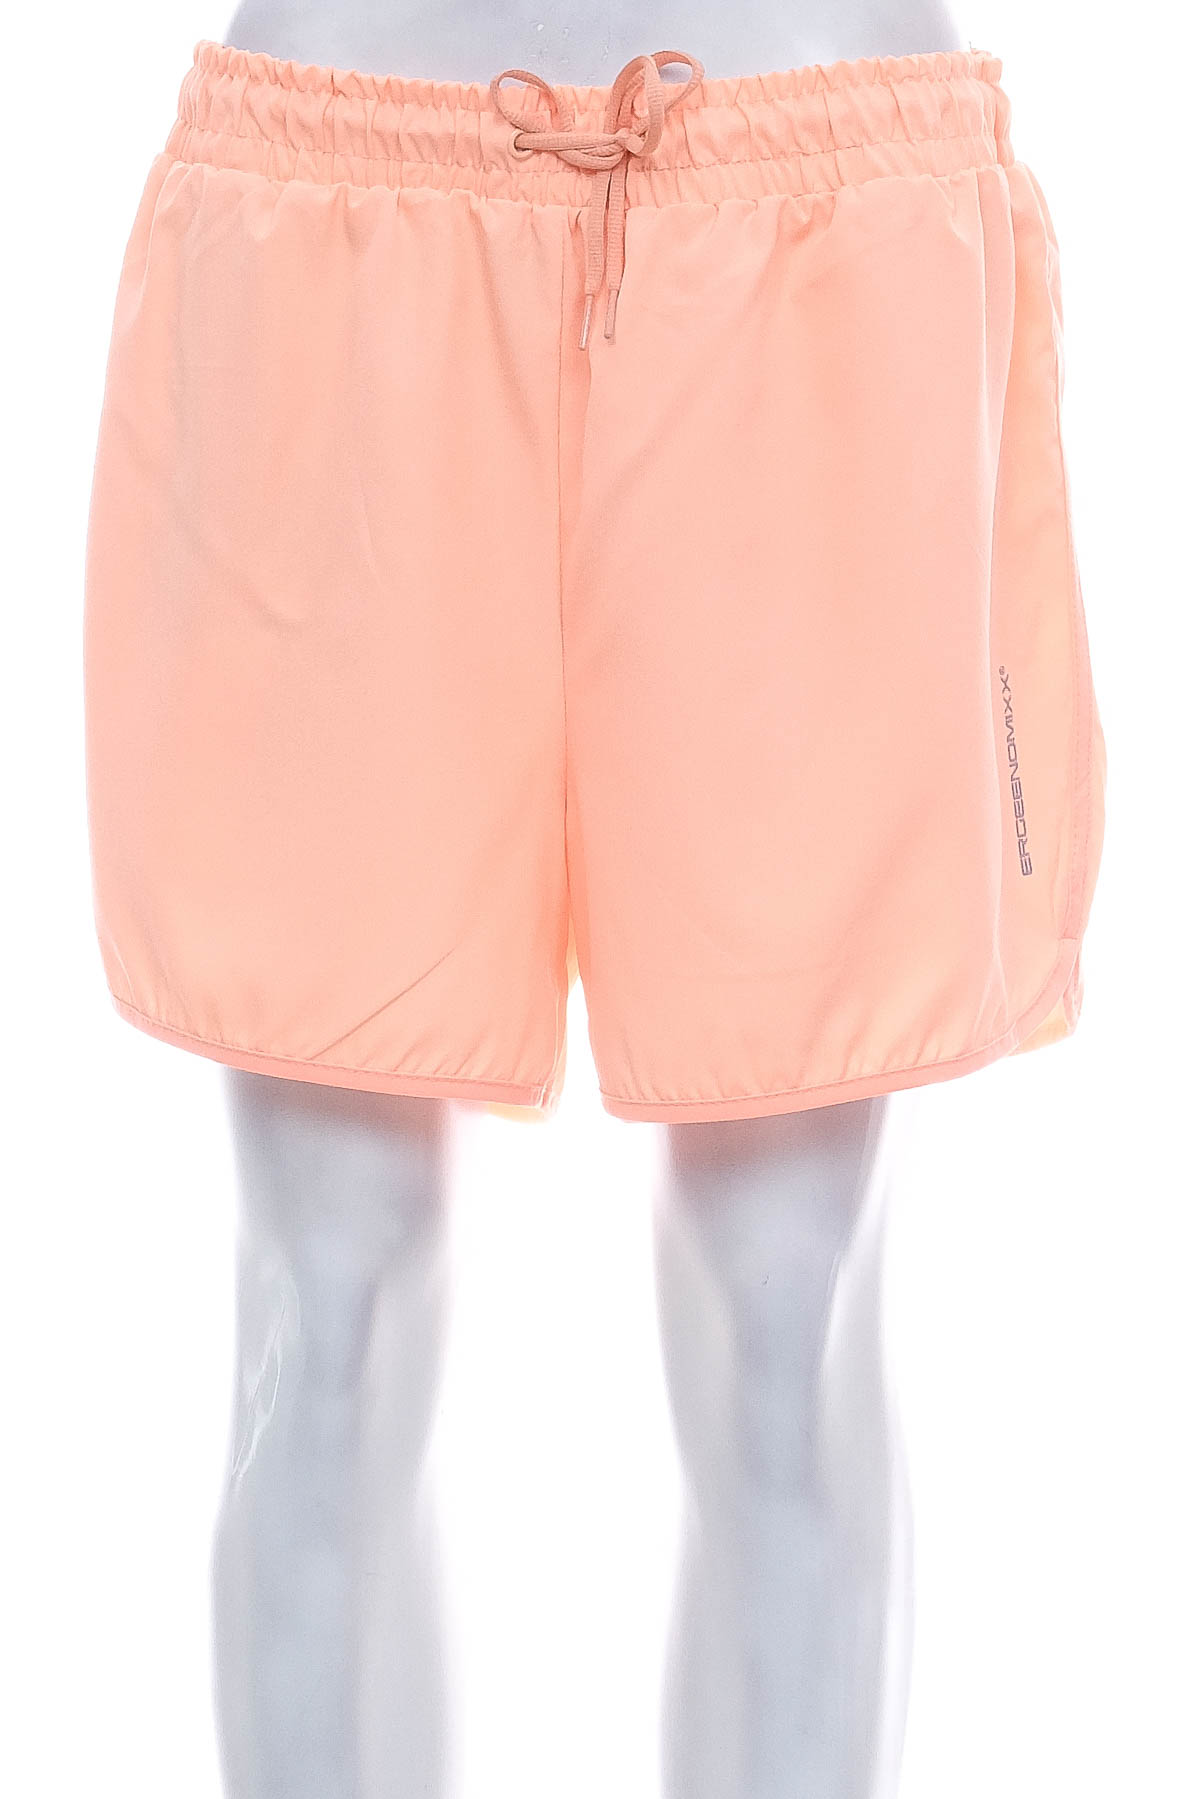 Women's shorts - ERGEENOMIXX - 0